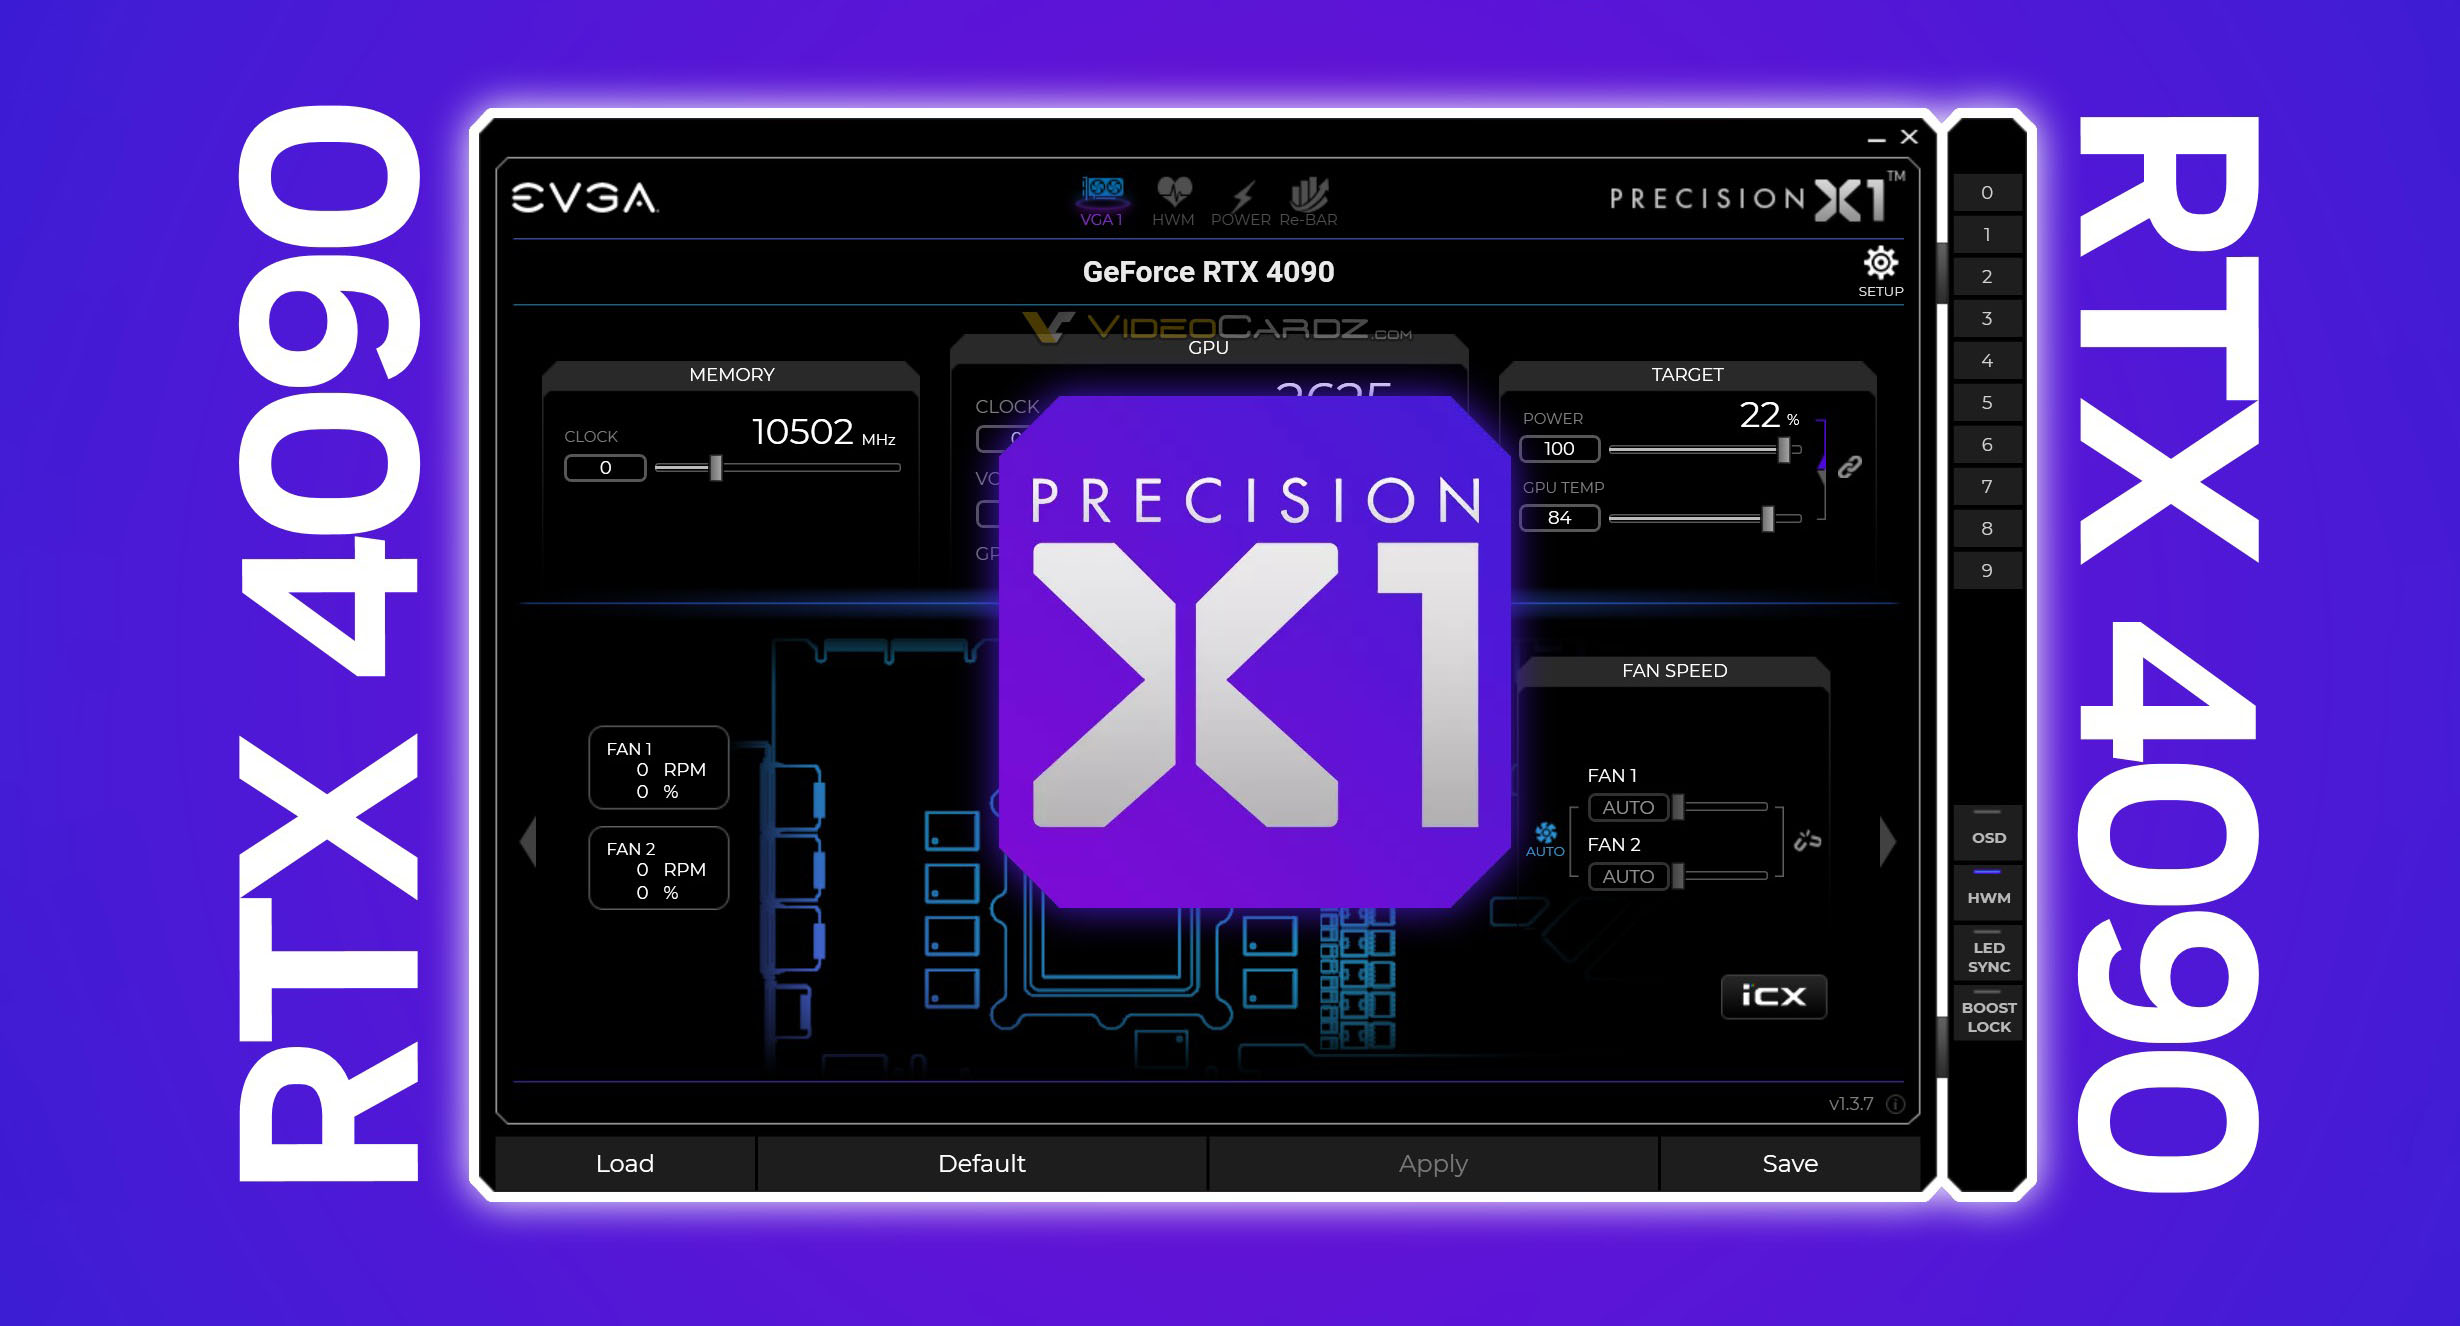 dybde Mængde af Kviksølv EVGA Precision X1 now supports GeForce RTX 4090, a card the company doesn't  have - VideoCardz.com